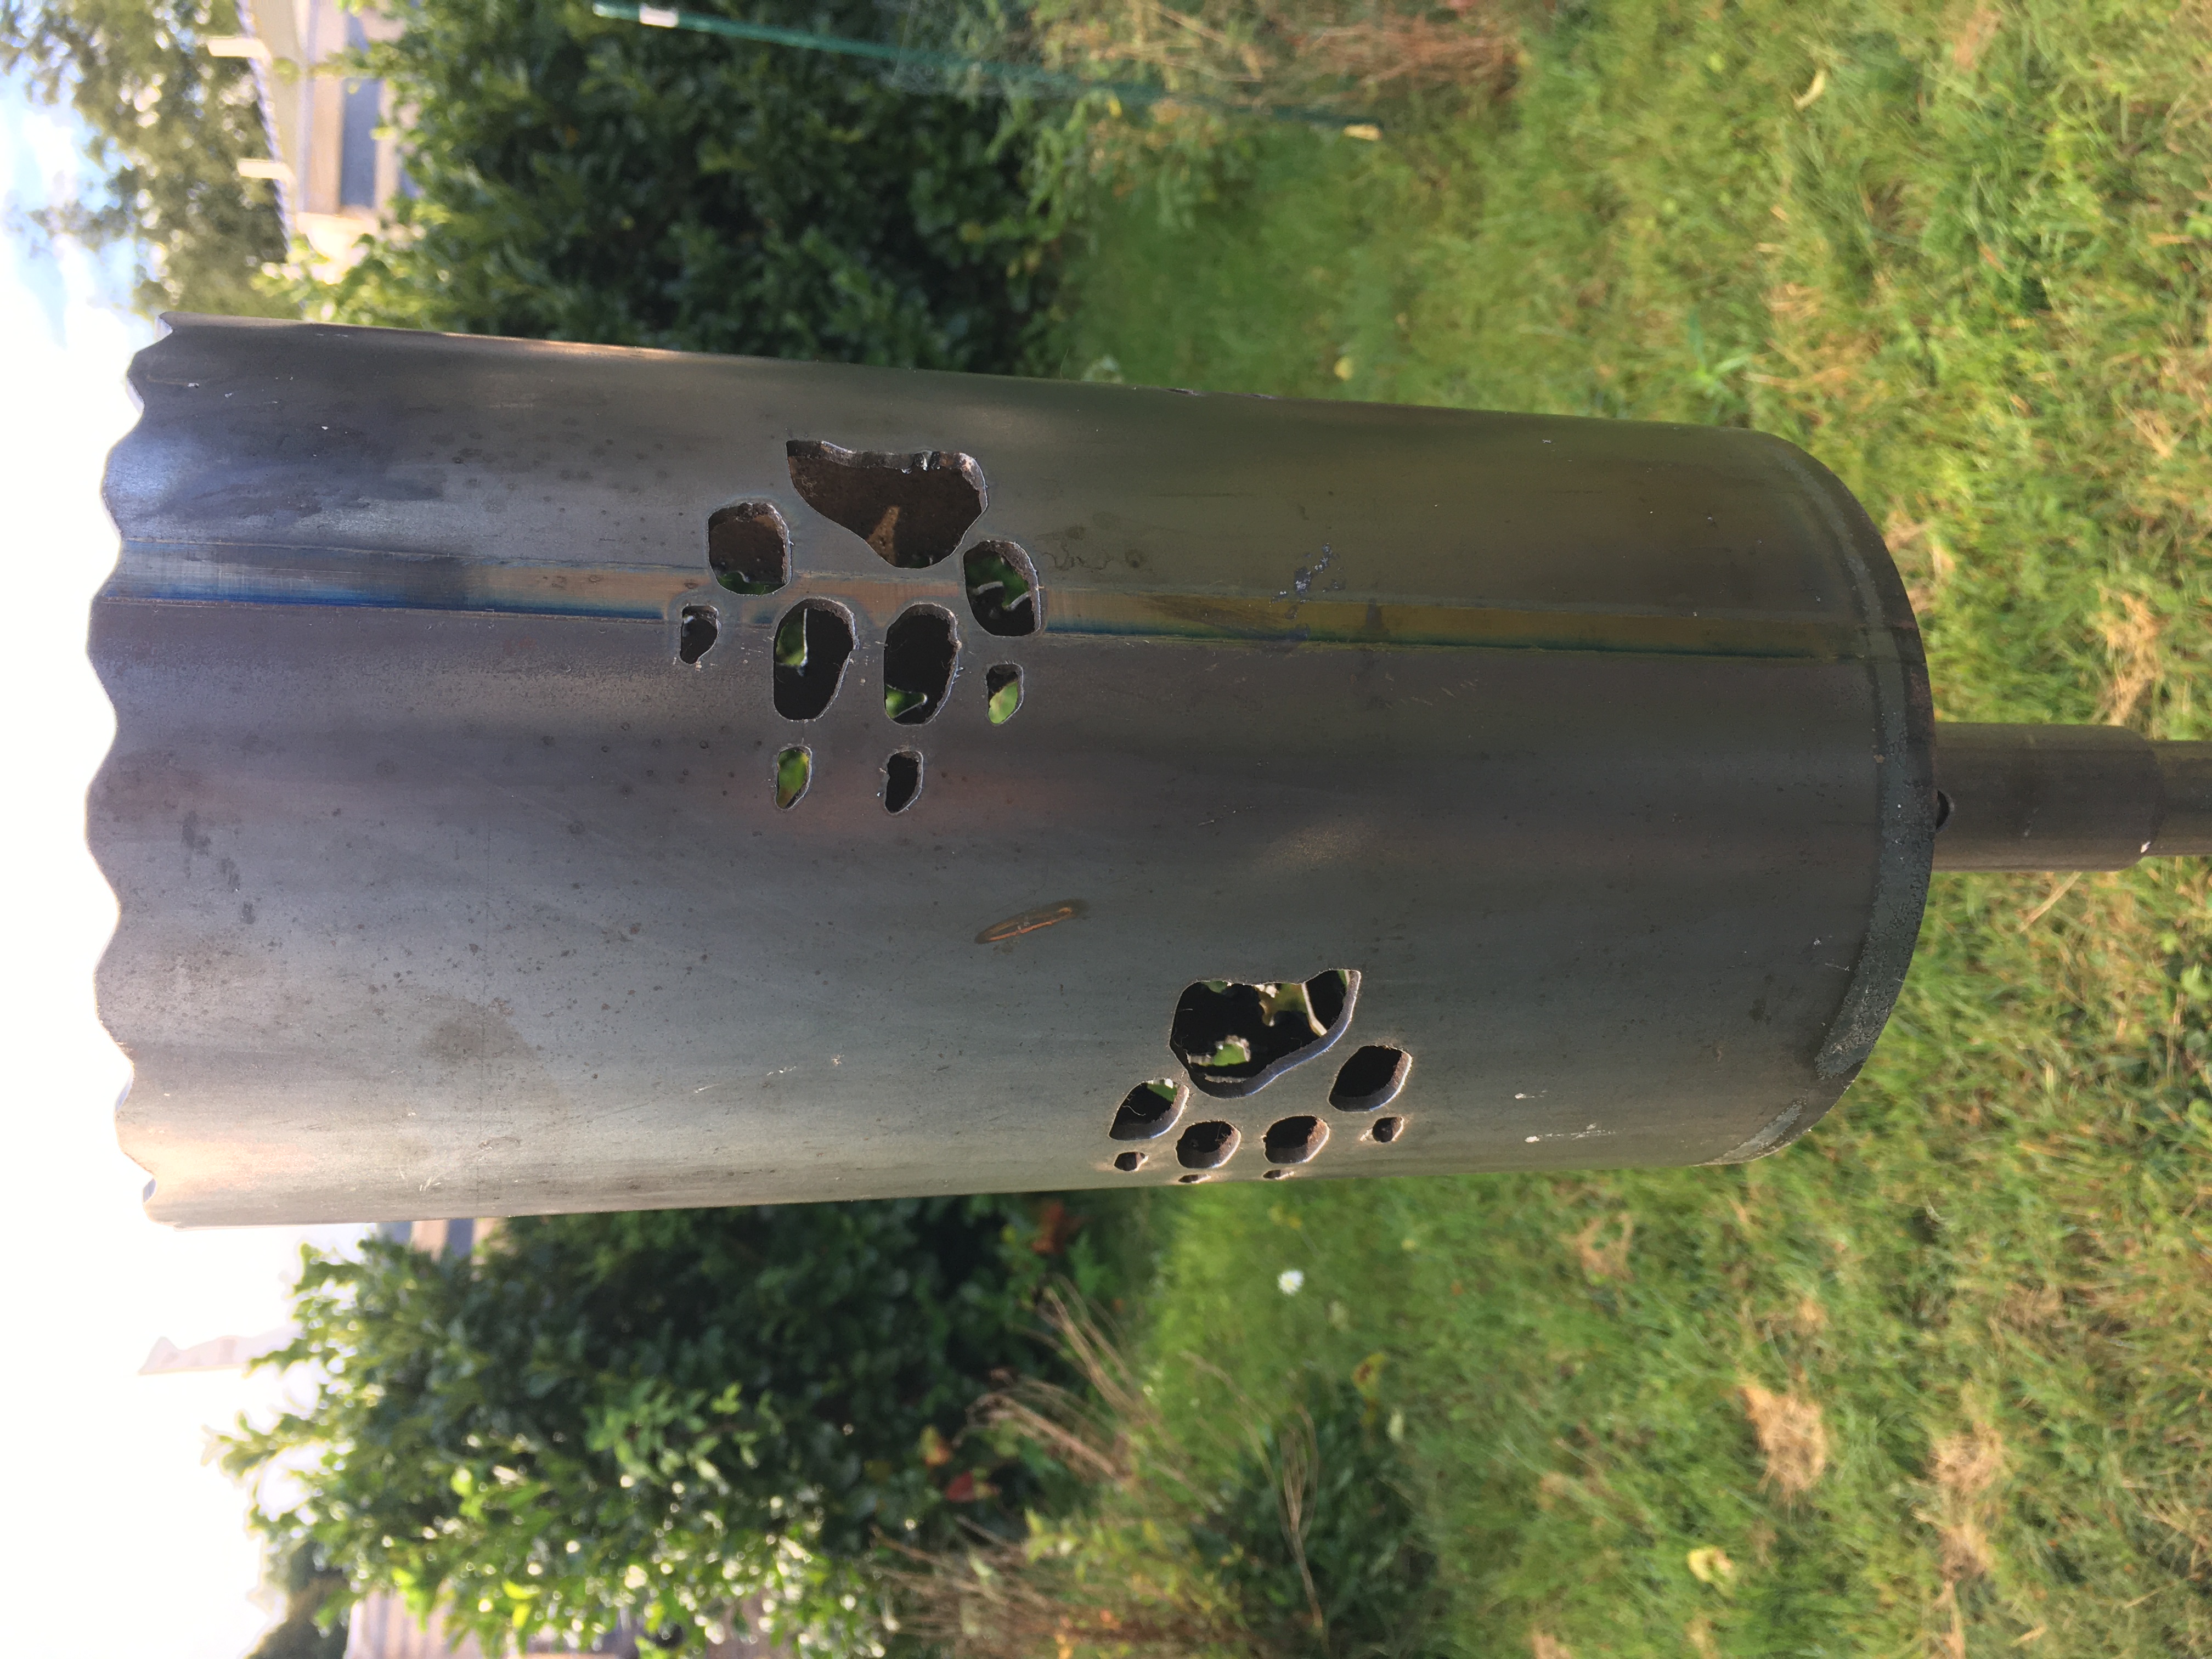 Gartenfackel groß Altdeutscher Schäferhund - inkl. Fackelstiel 110 cm angespitzt und 1 x Brennmaterial